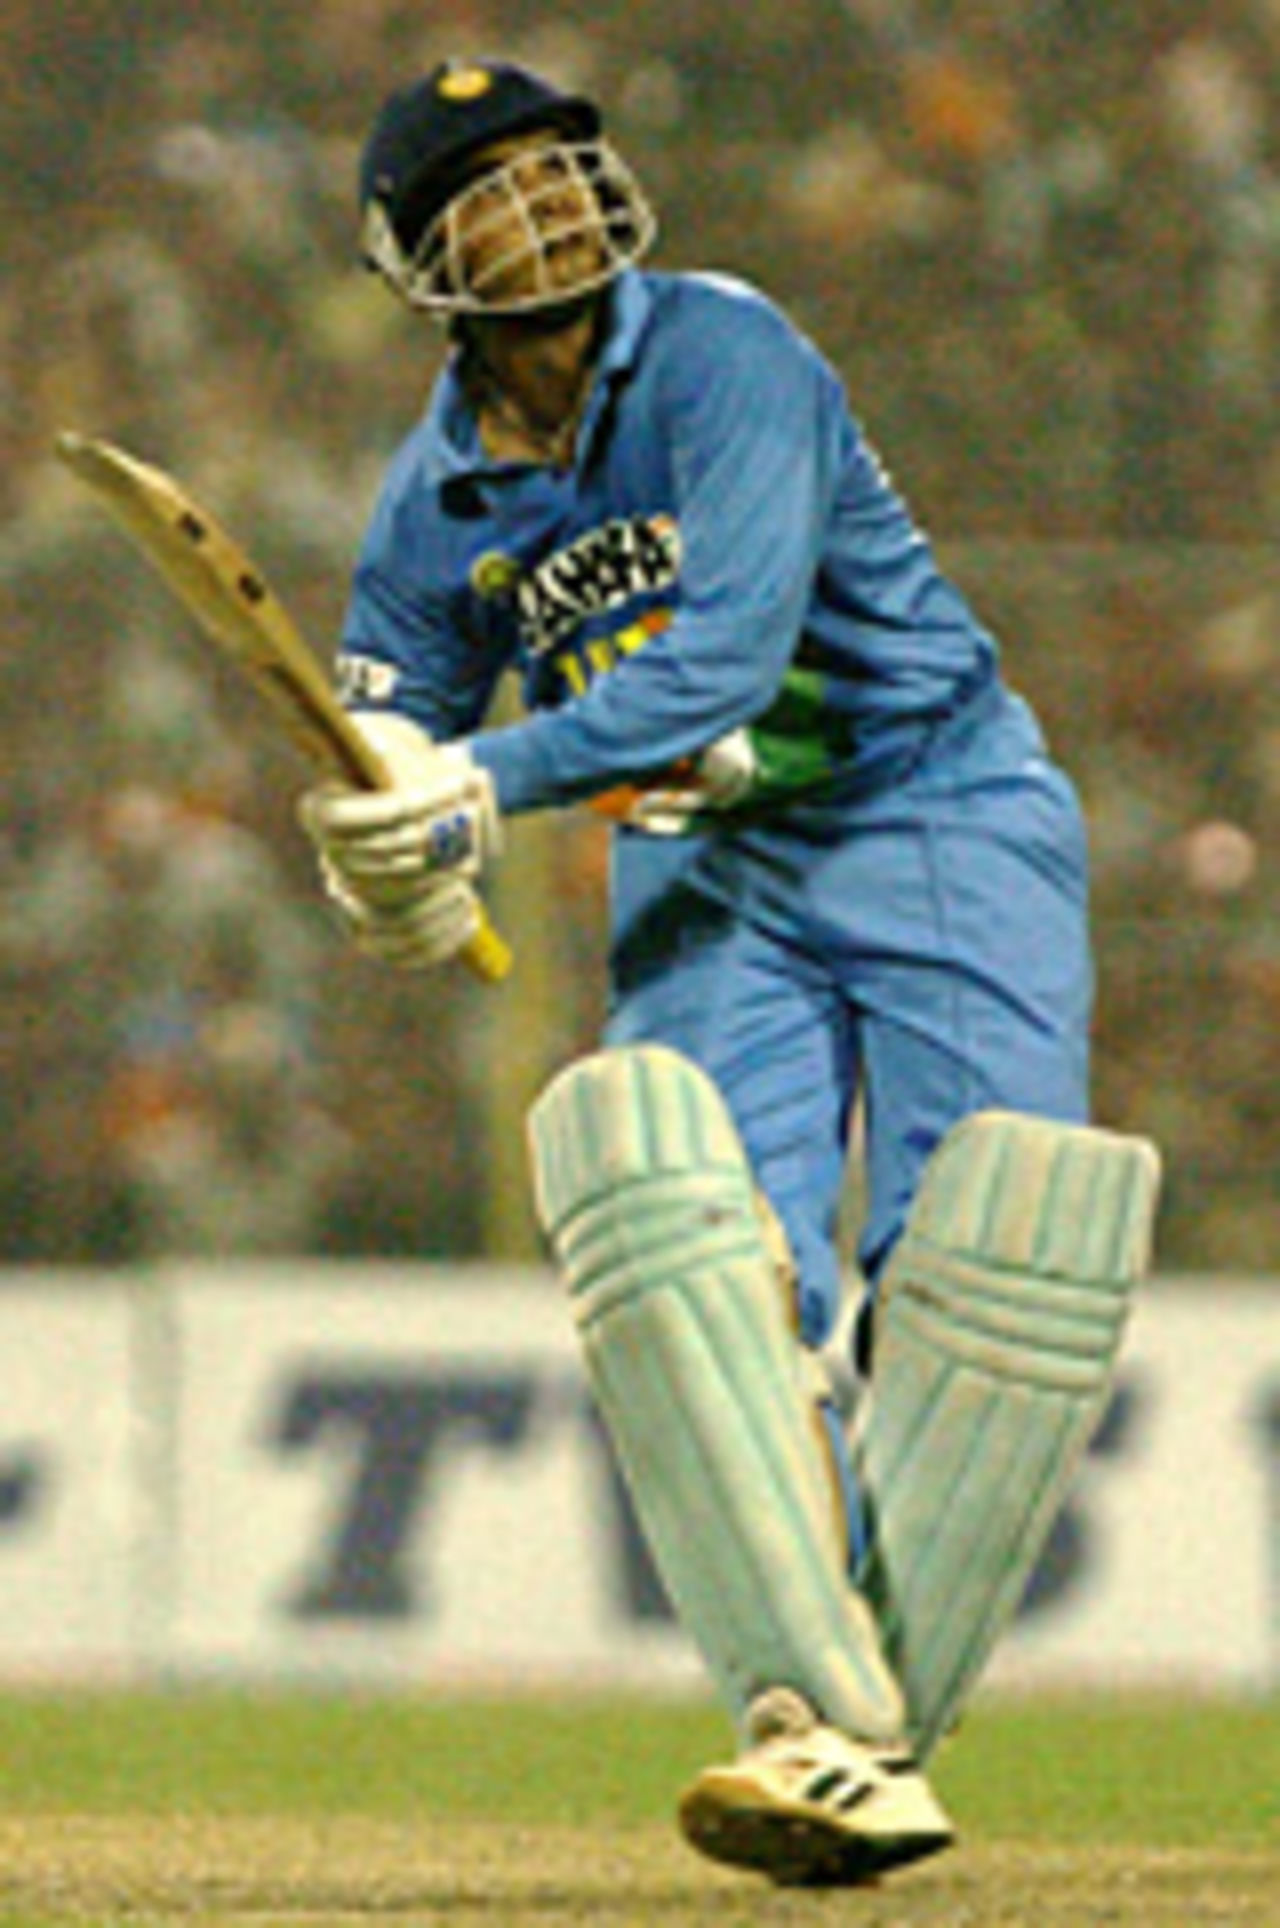 Sourav Ganguly batting, India v Pakistan, Kolkata, November 13 2004